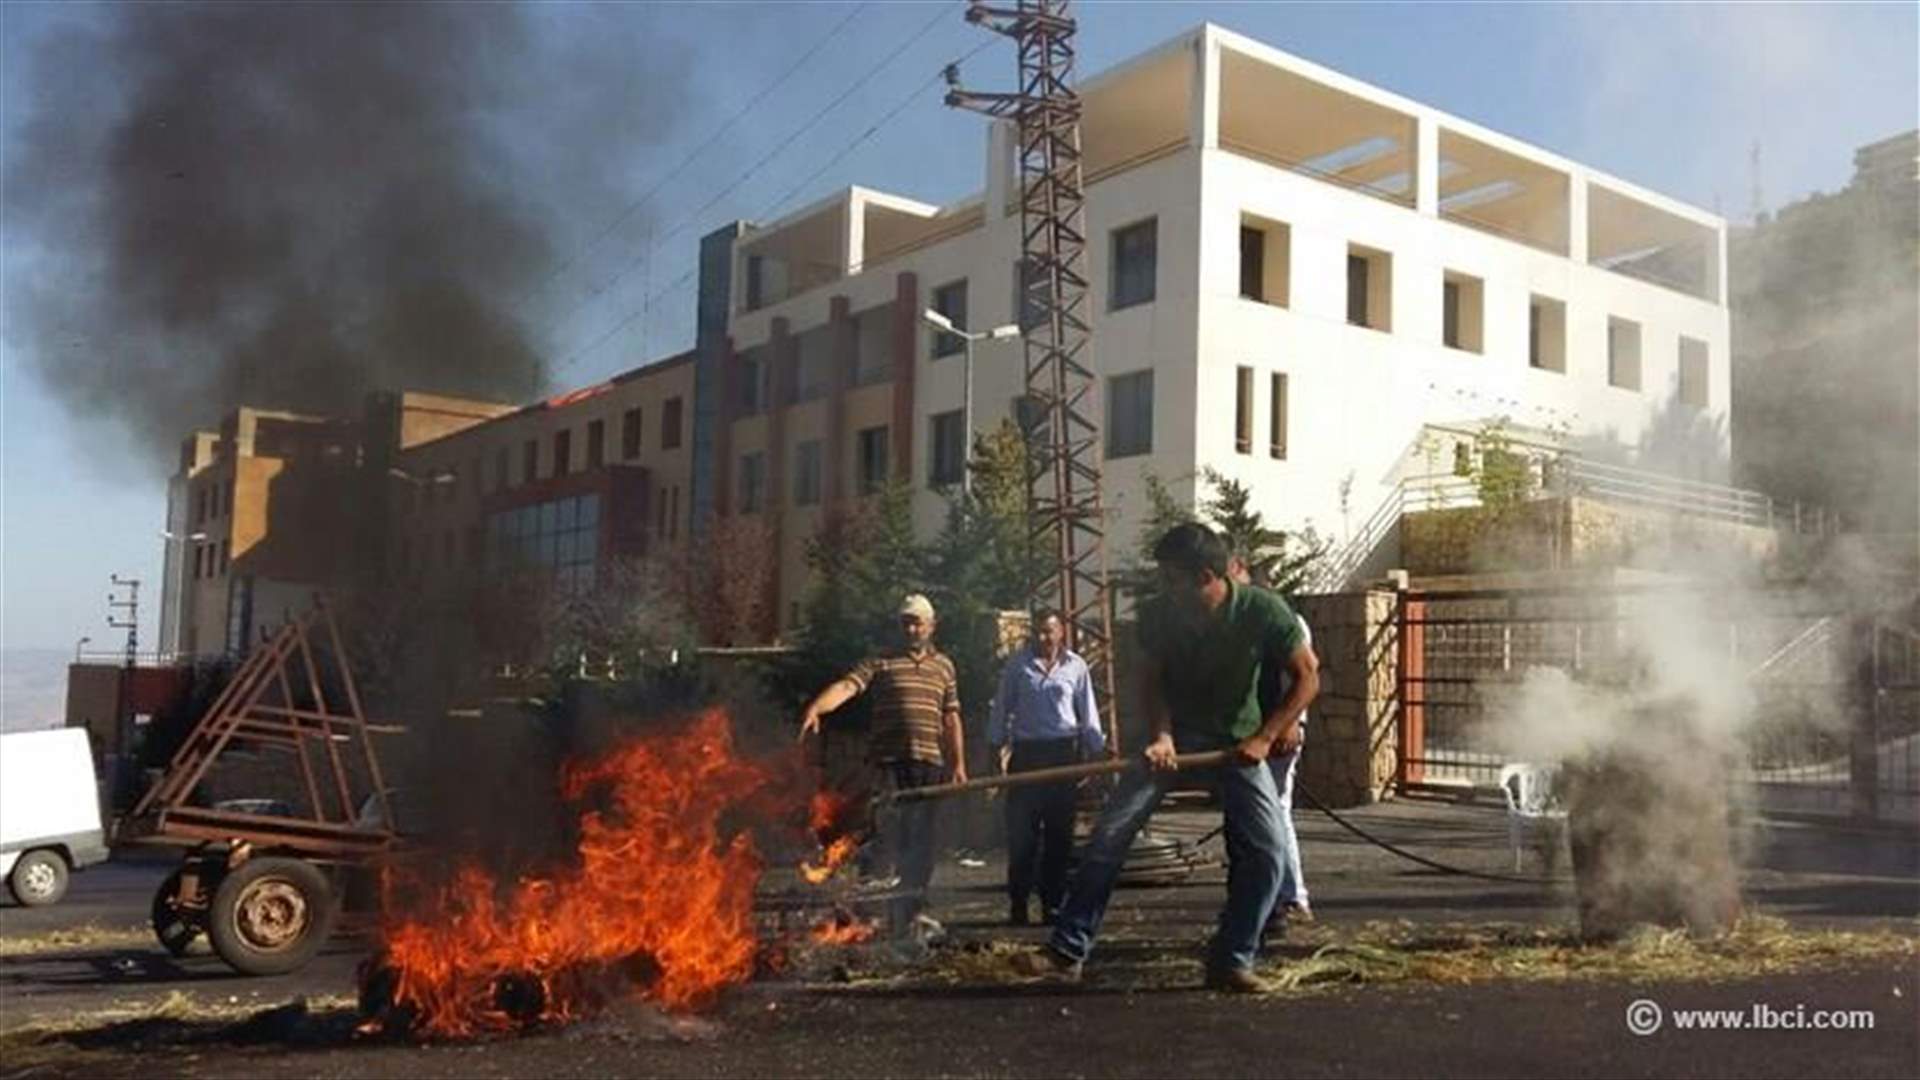 بالصورة - موظفون في مستشفى شبعا المقفل أحرقوا الدواليب امام مدخل المستشفى احتجاجا على طردهم